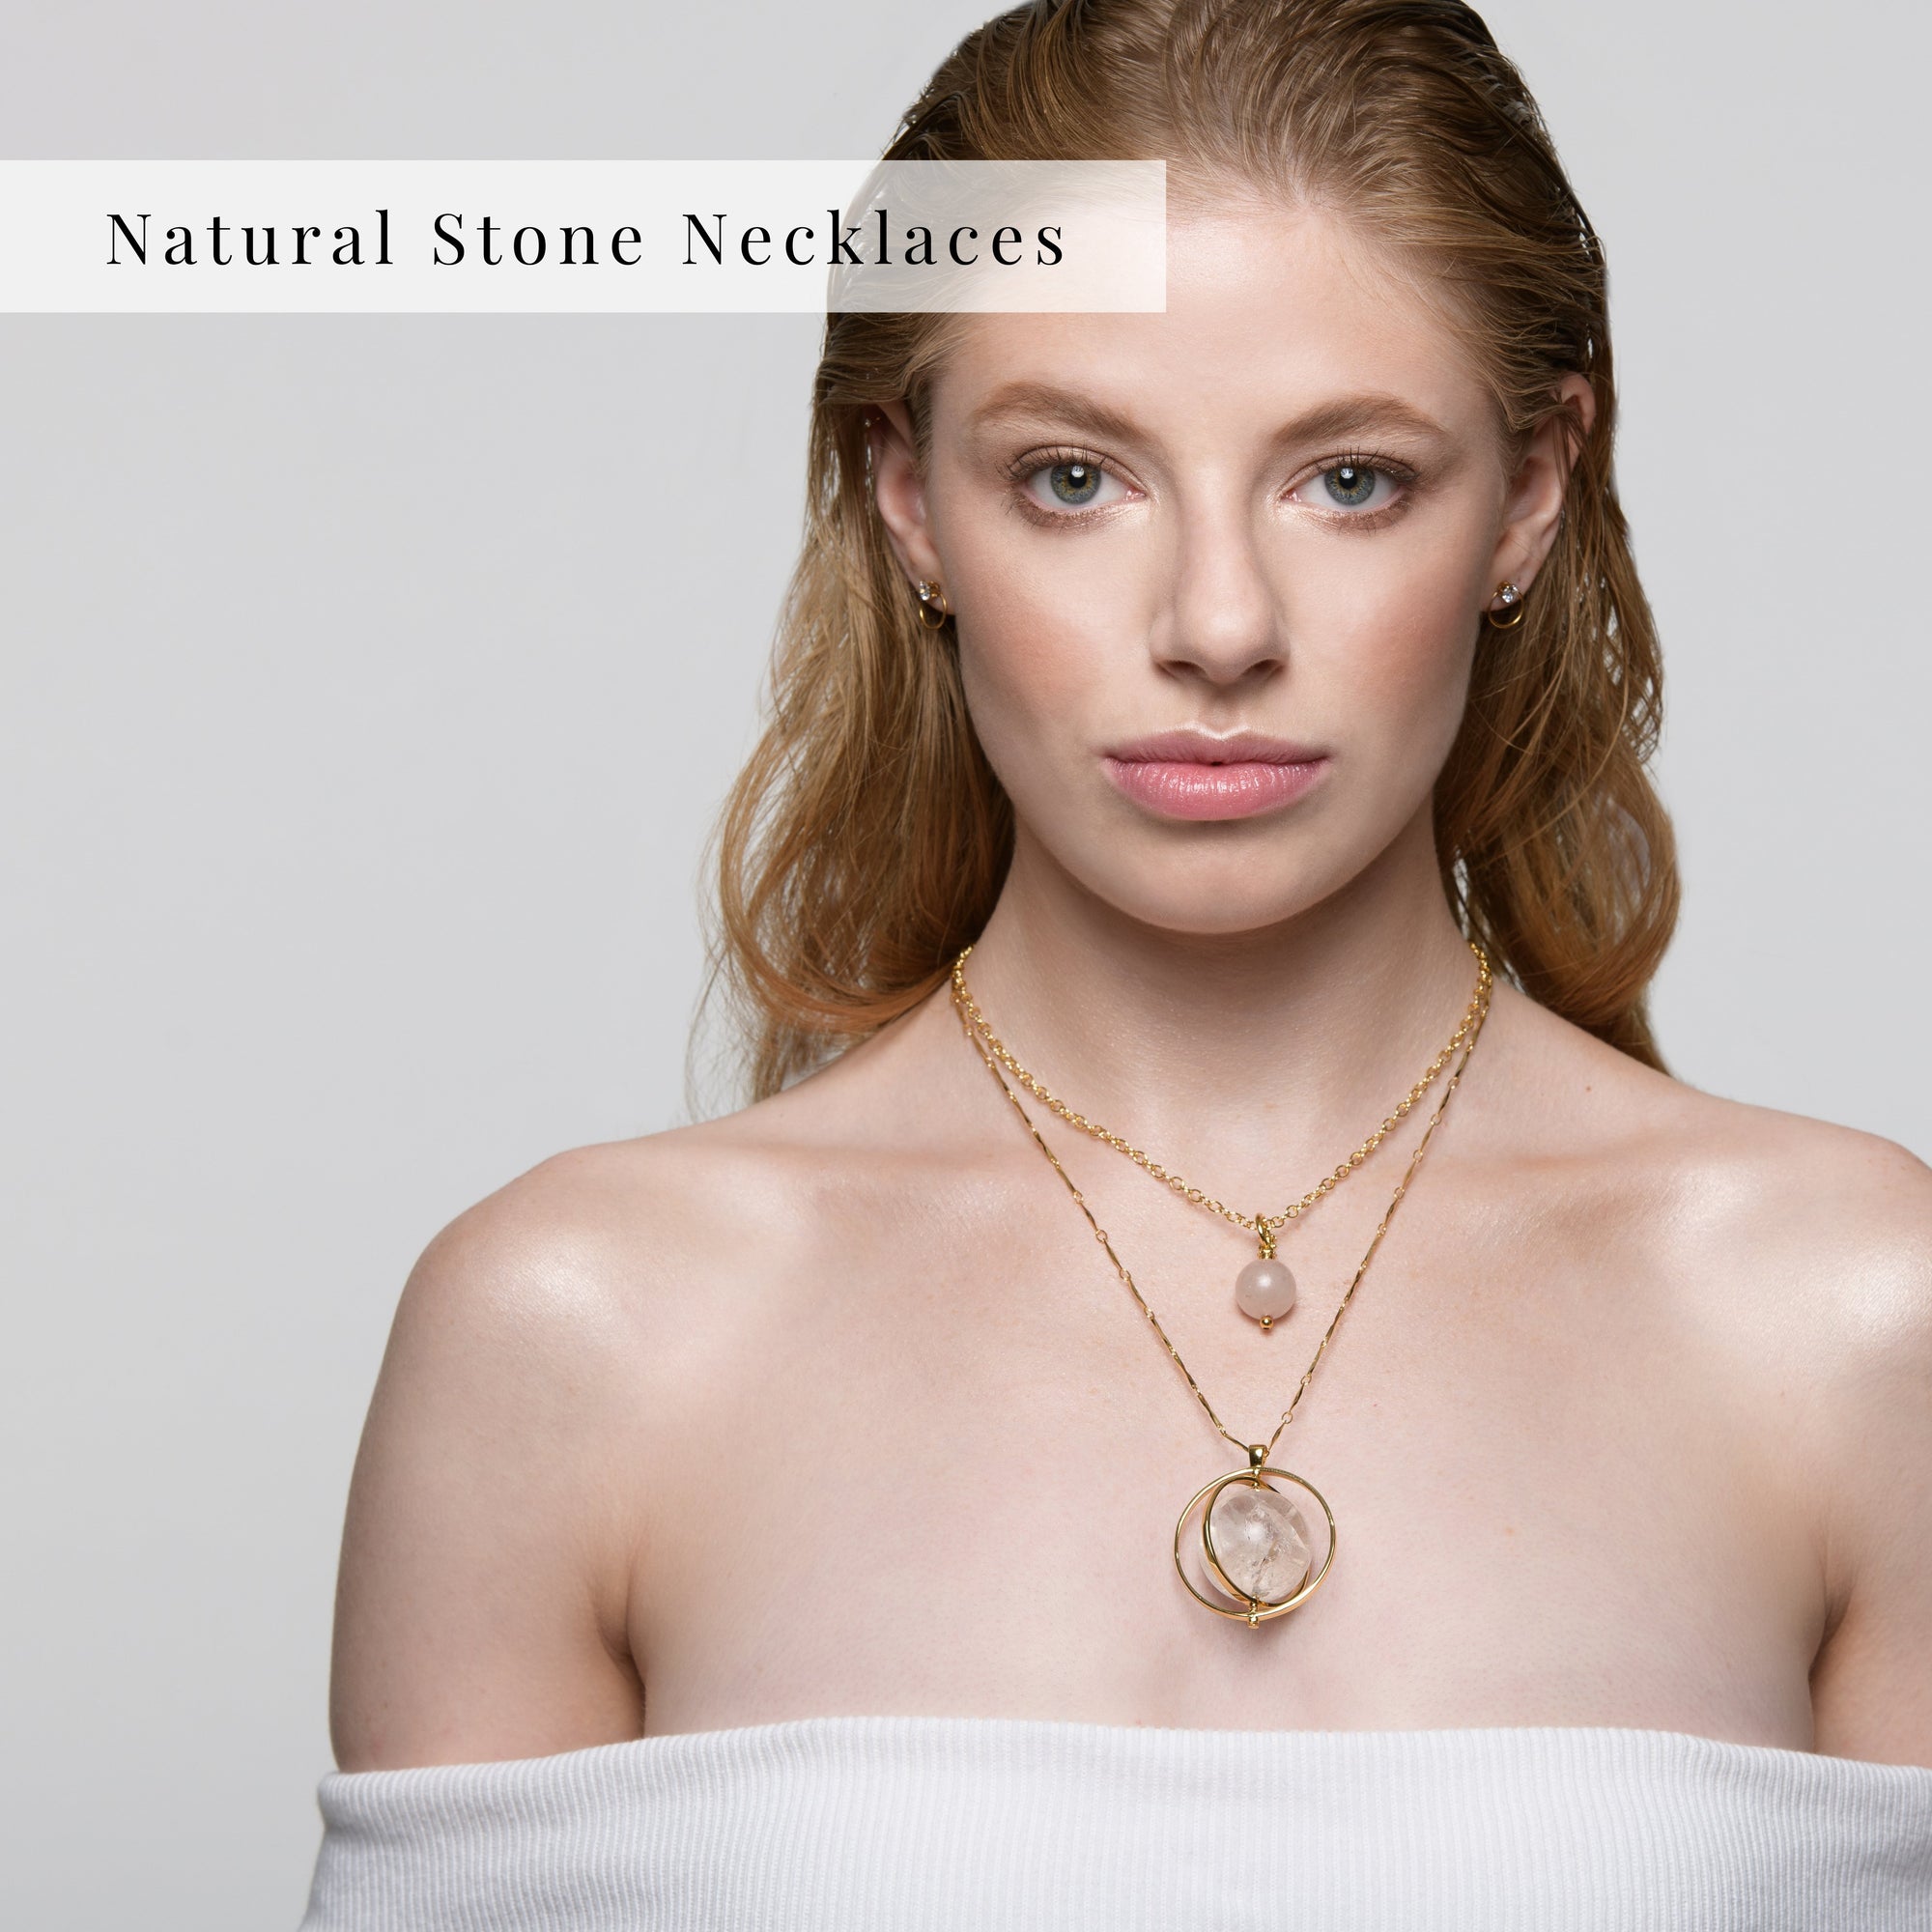 Natural Stone Necklaces | C.J.ROCKER